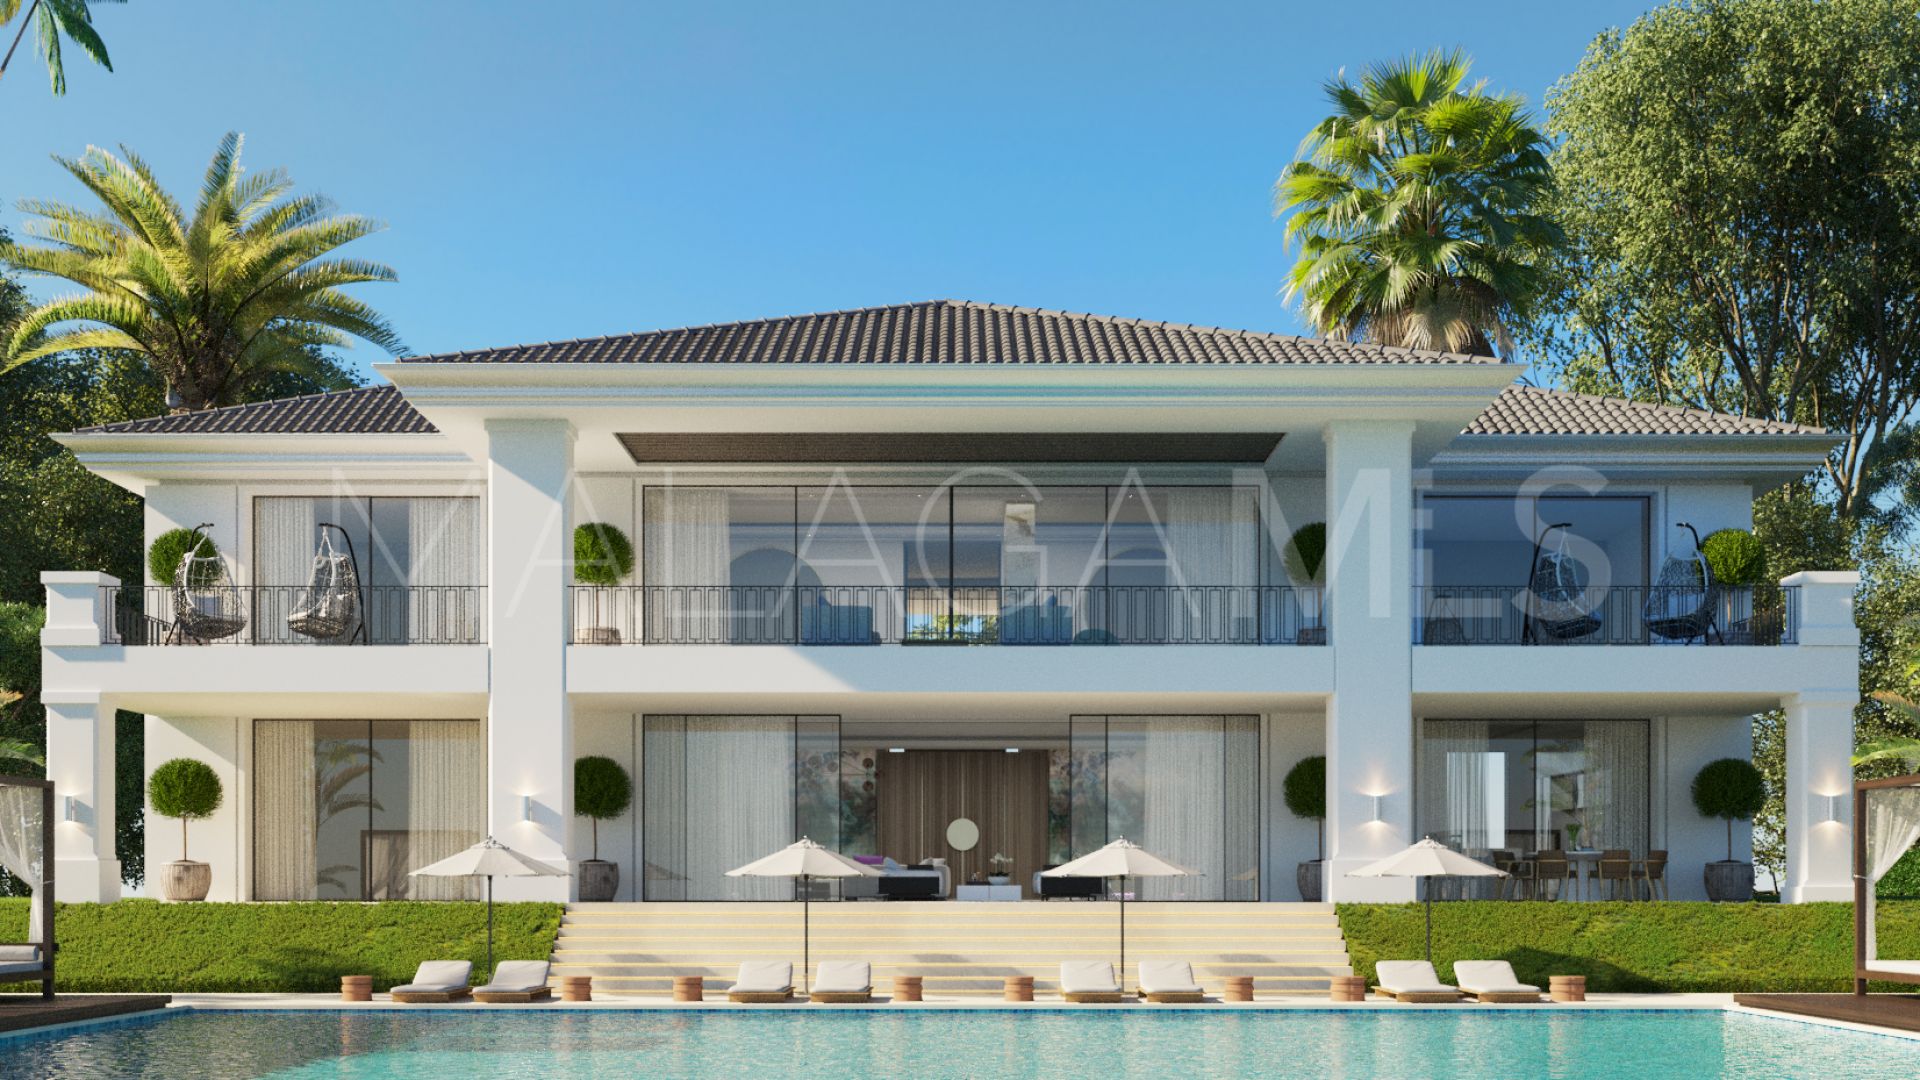 Se vende villa in Capanes Sur with 5 bedrooms